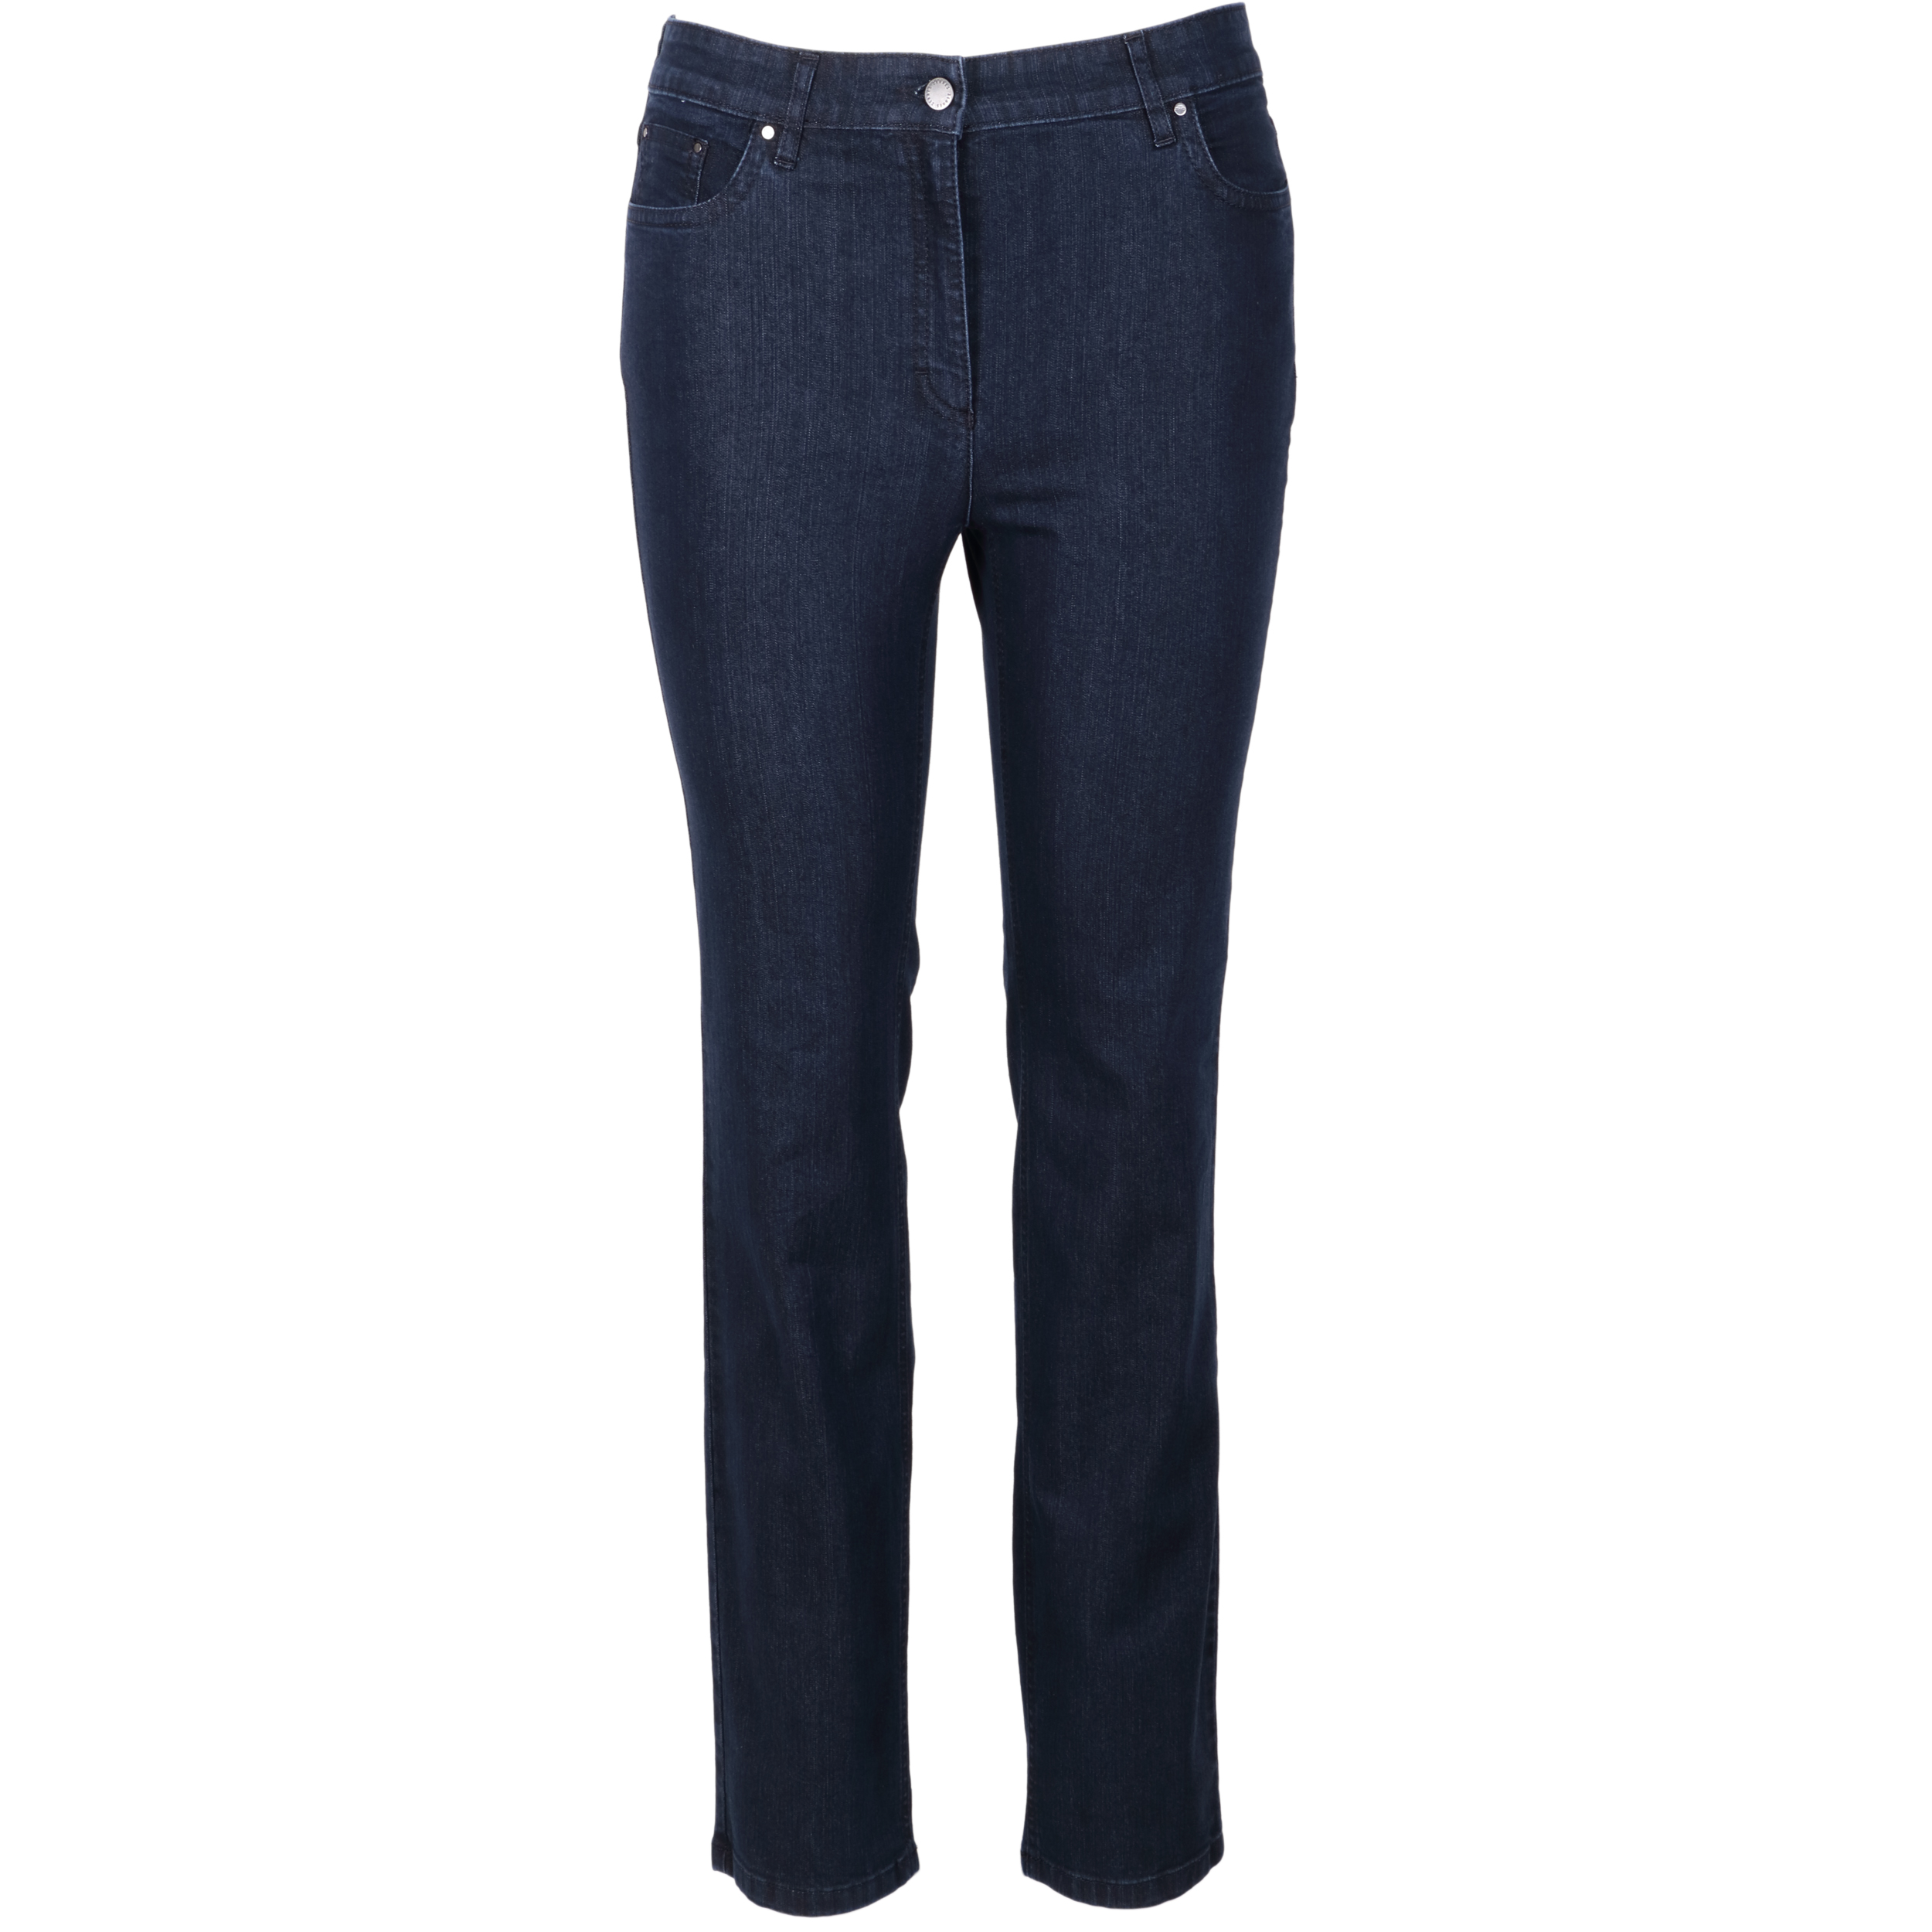 Zerres Damen Jeans Cora comfort S 42 dunkelblau